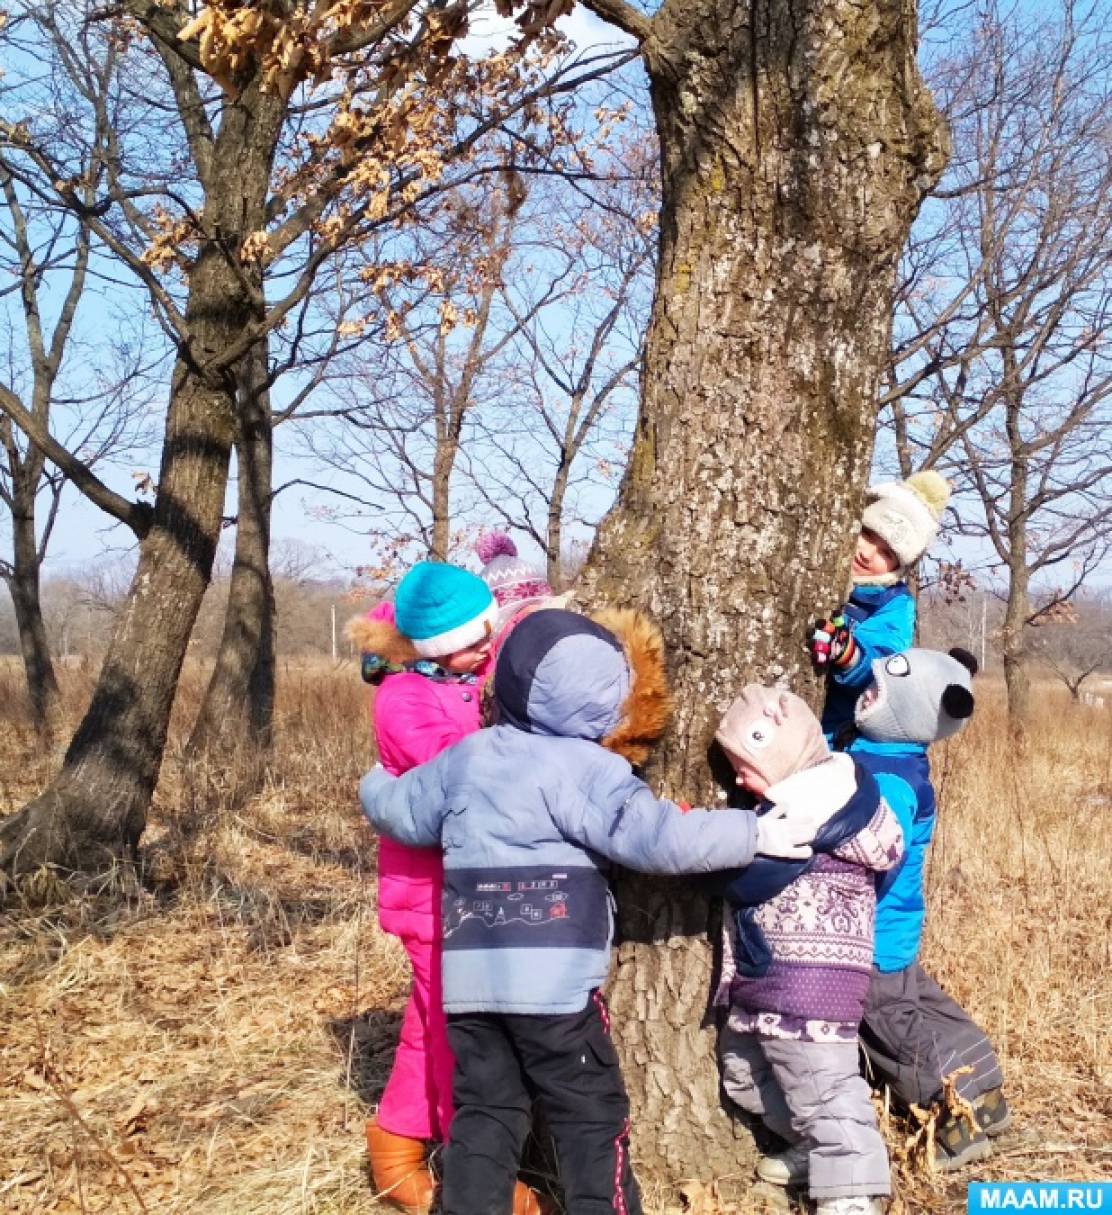 Тема прогулки с детьми. Наблюдение на прогулке. Дети наблюдают за деревьями. Весенняя прогулка в детском саду. Дети на прогулке весной.